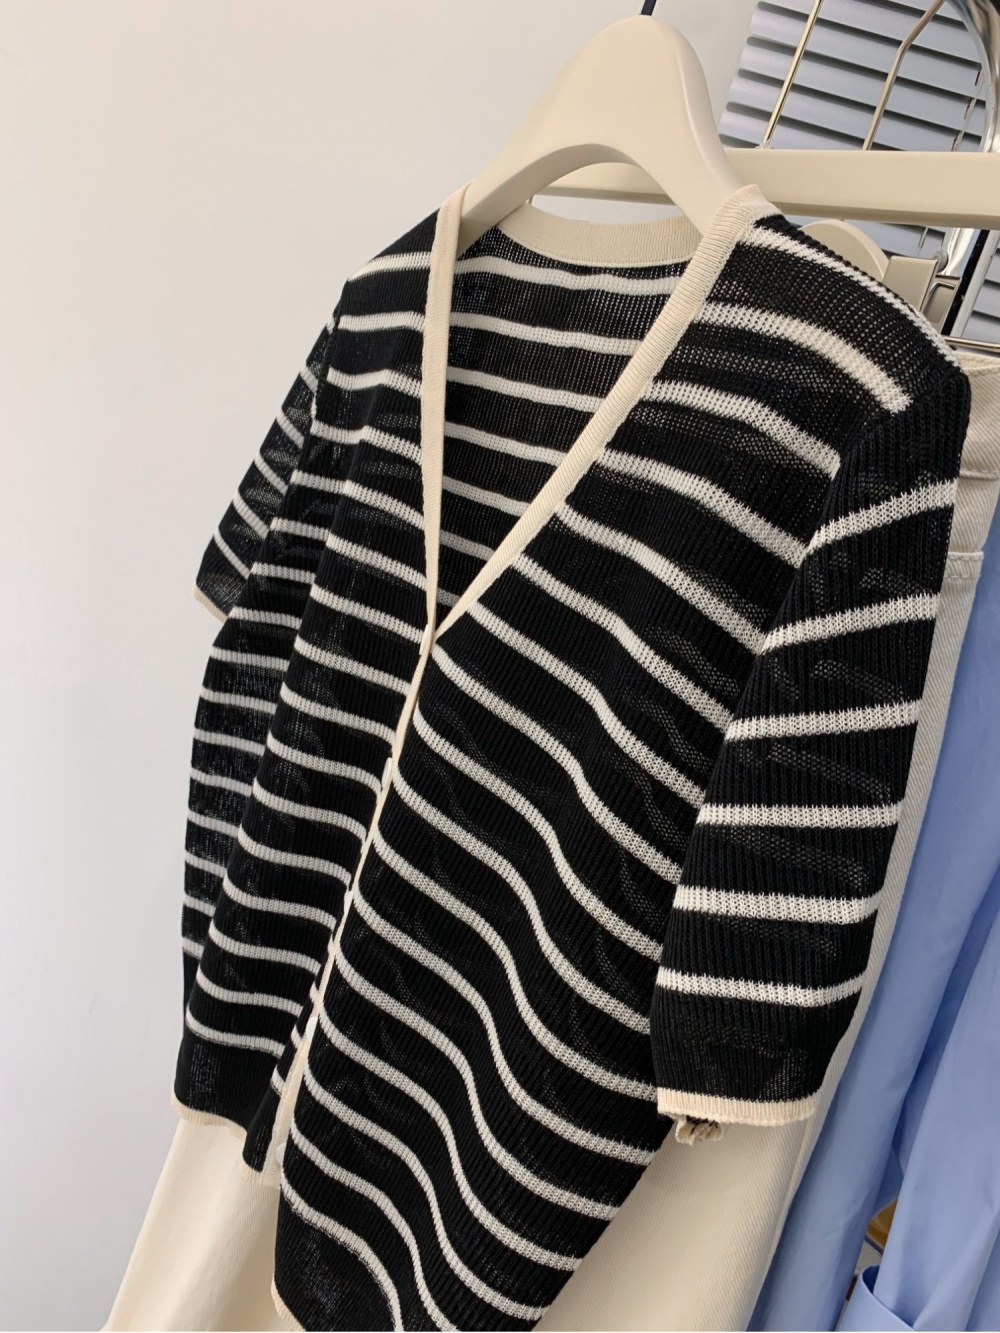 Stripe summer sweater V-neck cardigan for women